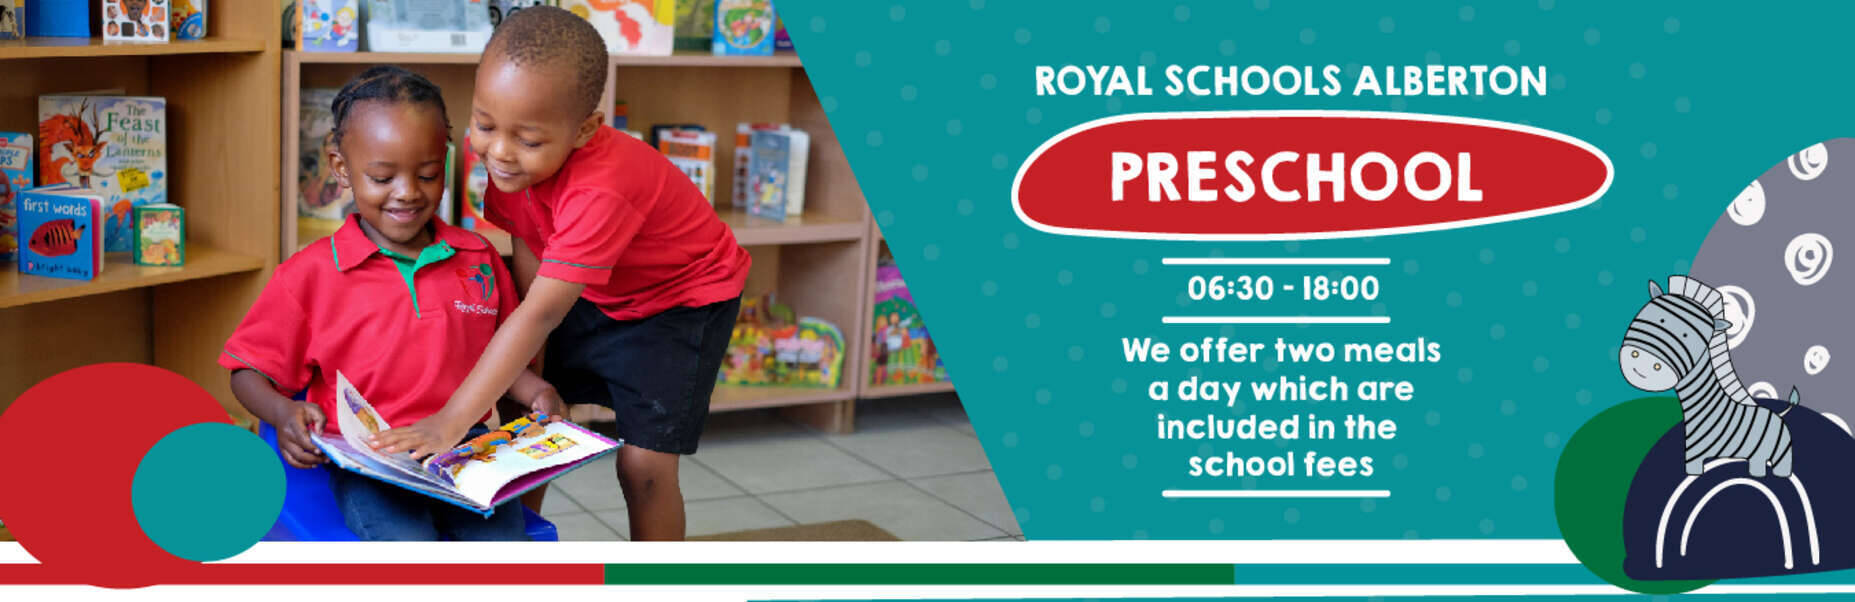 royal-schools private preschool education